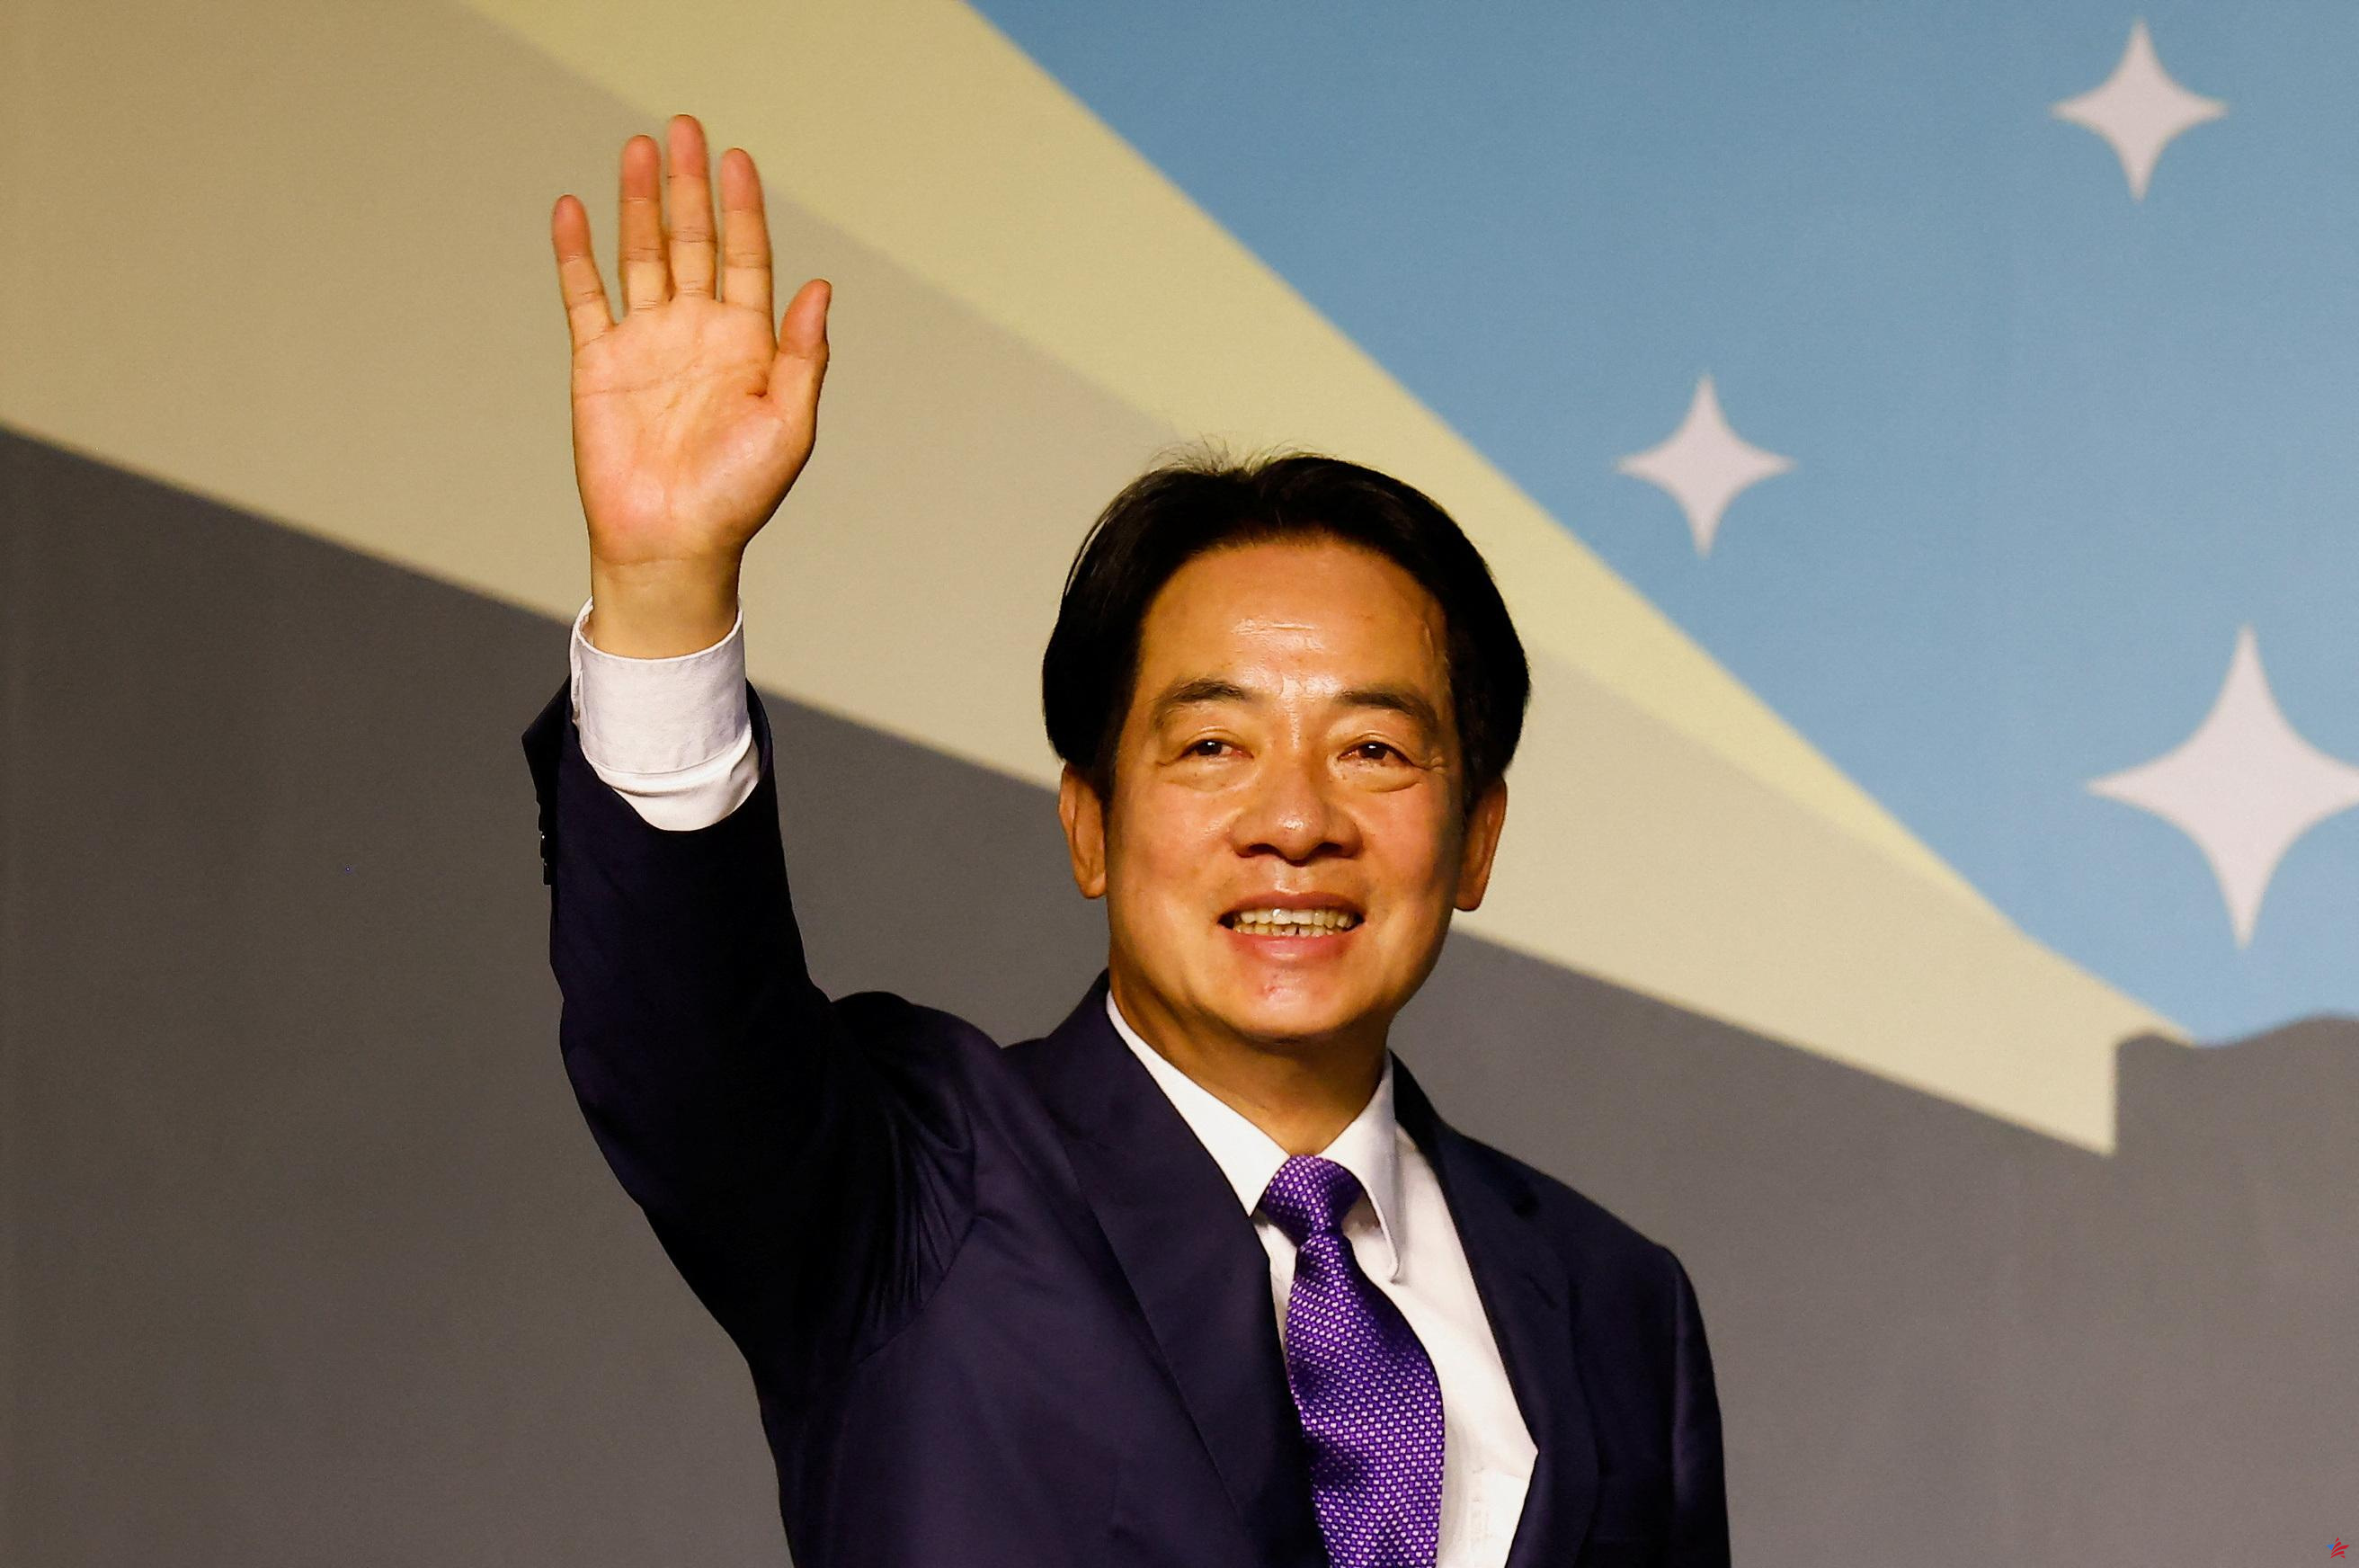 Taiwán: el presidente electo Lai Ching-te agradece a Estados Unidos su “fuerte apoyo” contra China